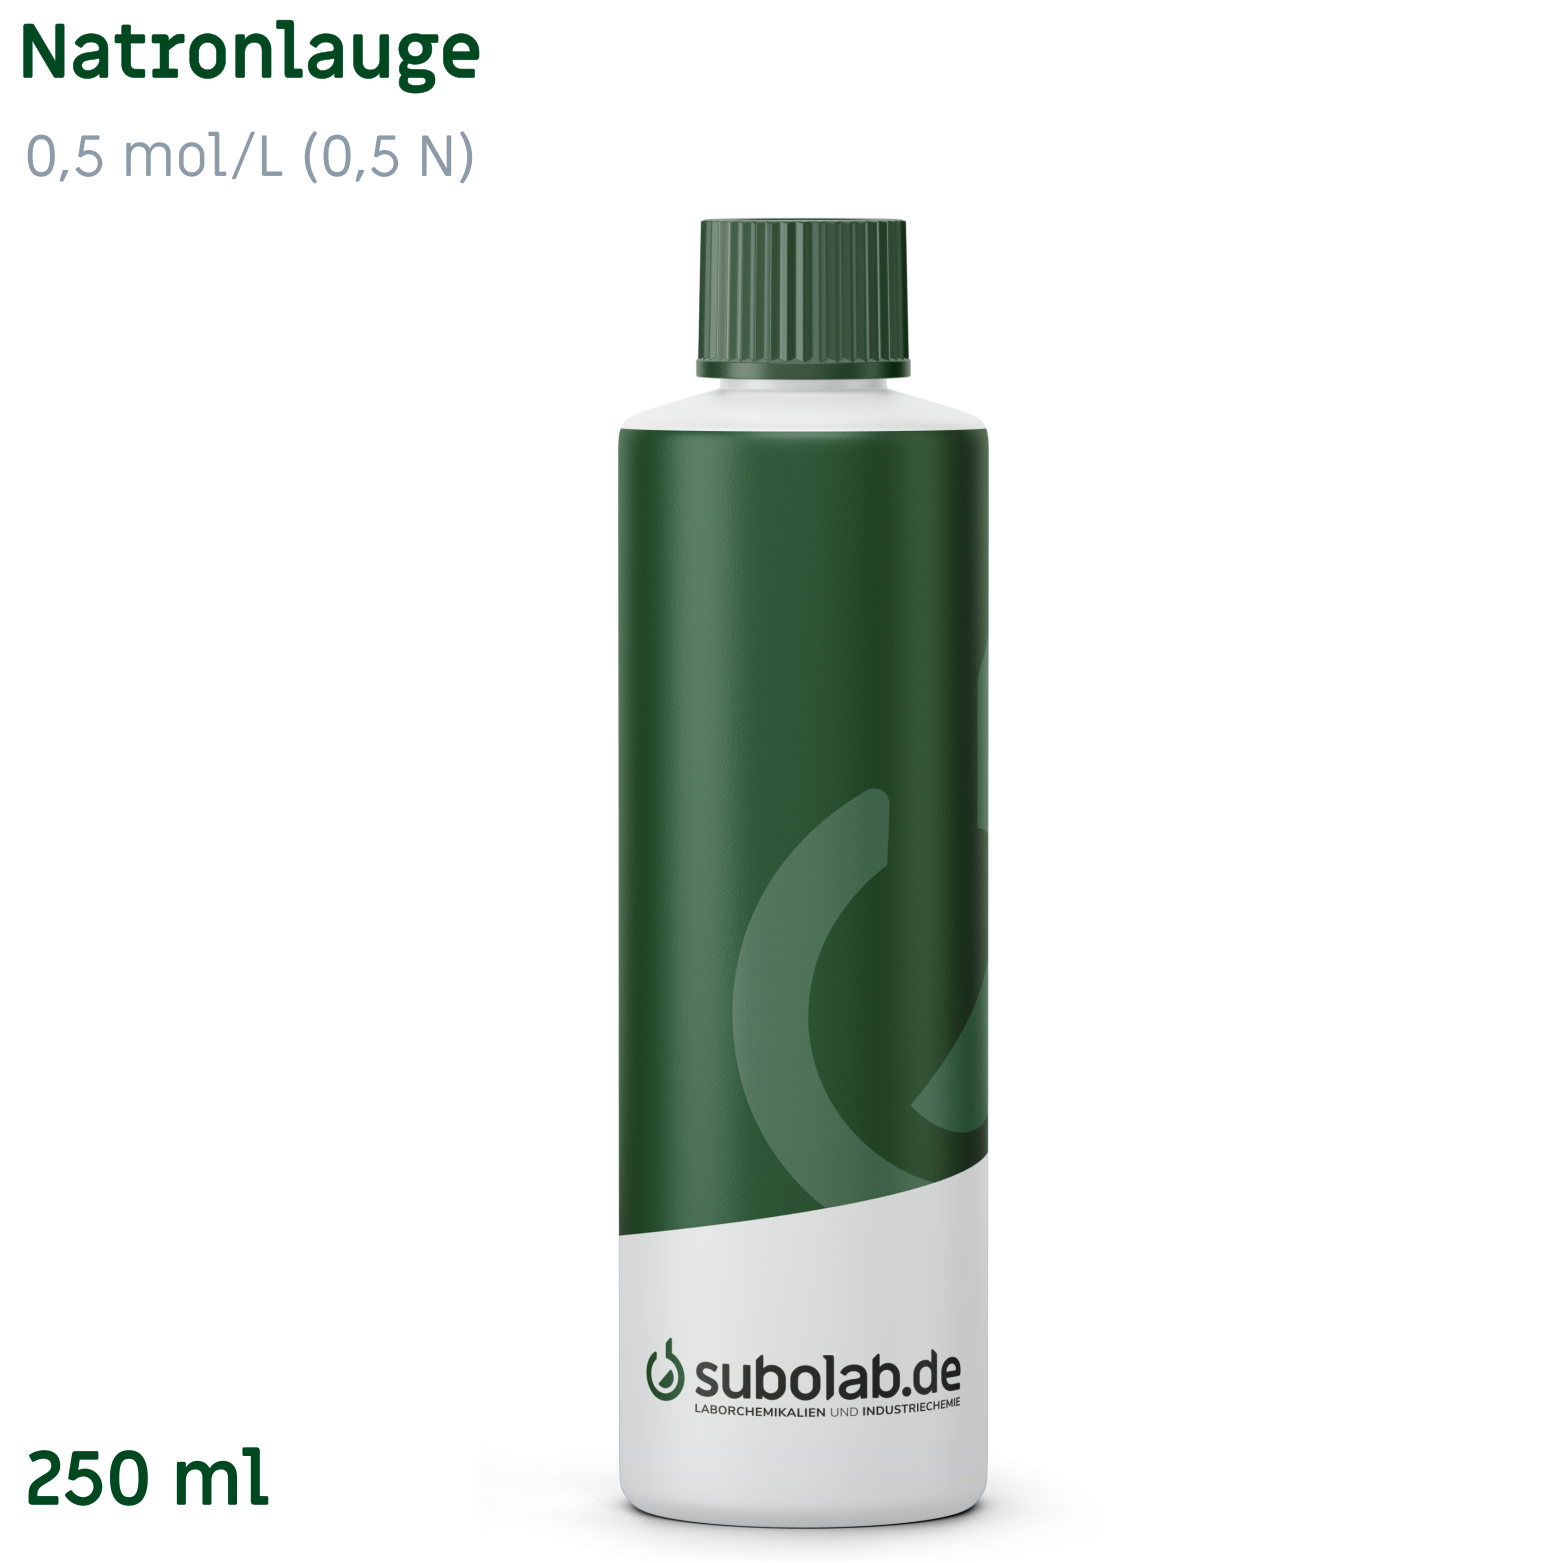 Bild von Natronlauge 0,5 mol/L (0,5 N) (250 ml)